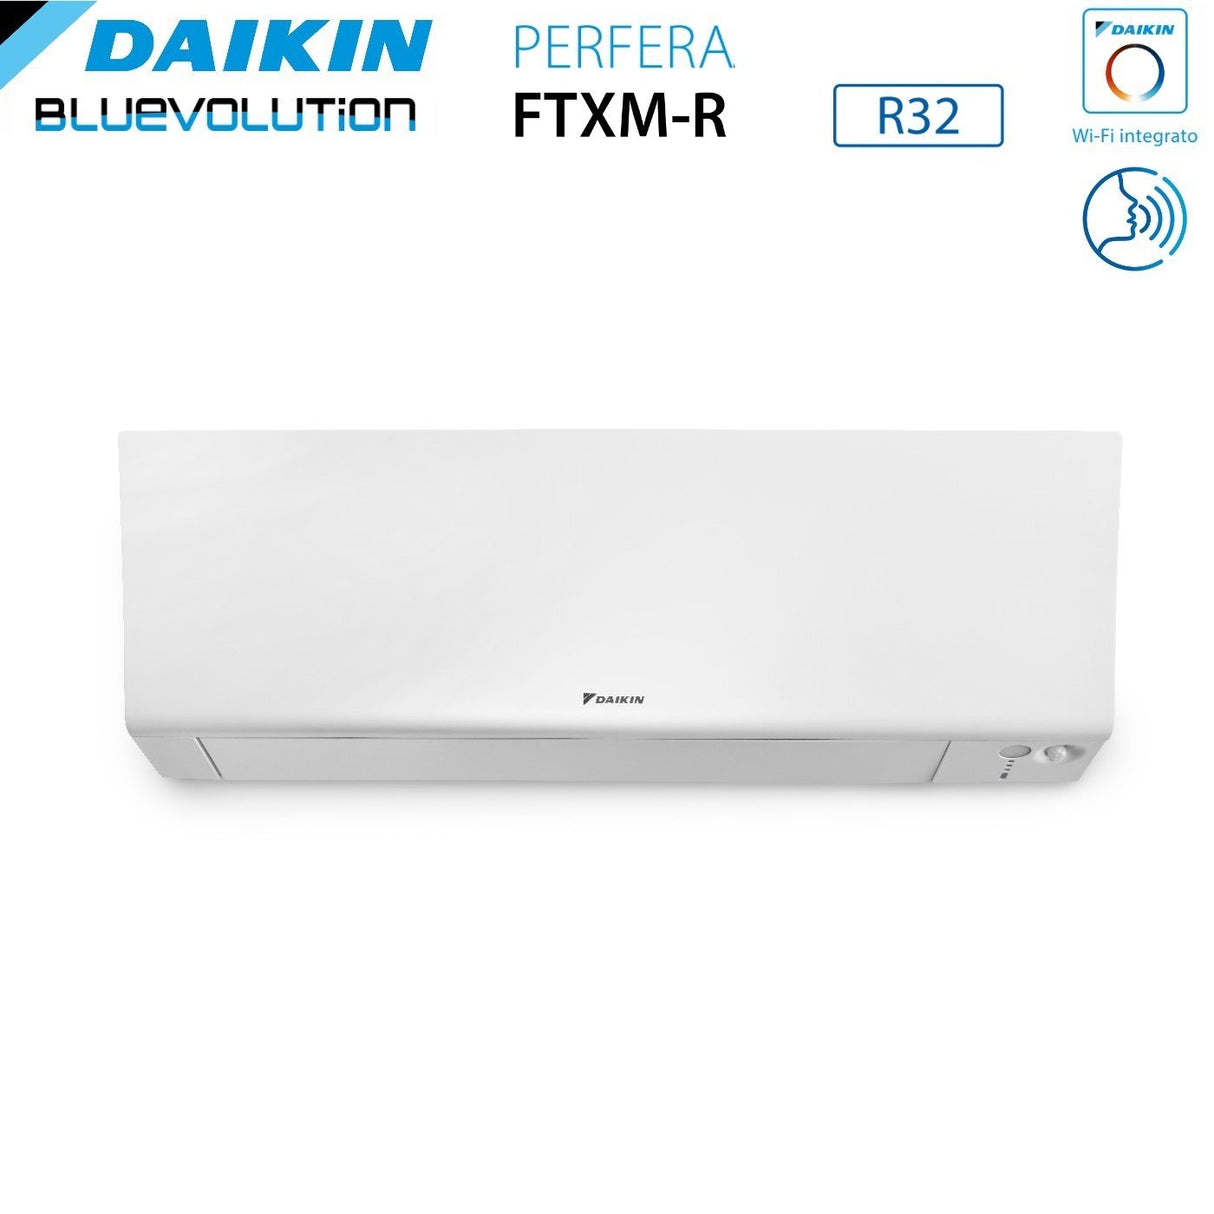 immagine-3-daikin-climatizzatore-condizionatore-daikin-bluevolution-quadri-split-inverter-serie-ftxmr-perfera-wall-7799-con-4mxm80a-r-32-wi-fi-integrato-7000700090009000-garanzia-italiana